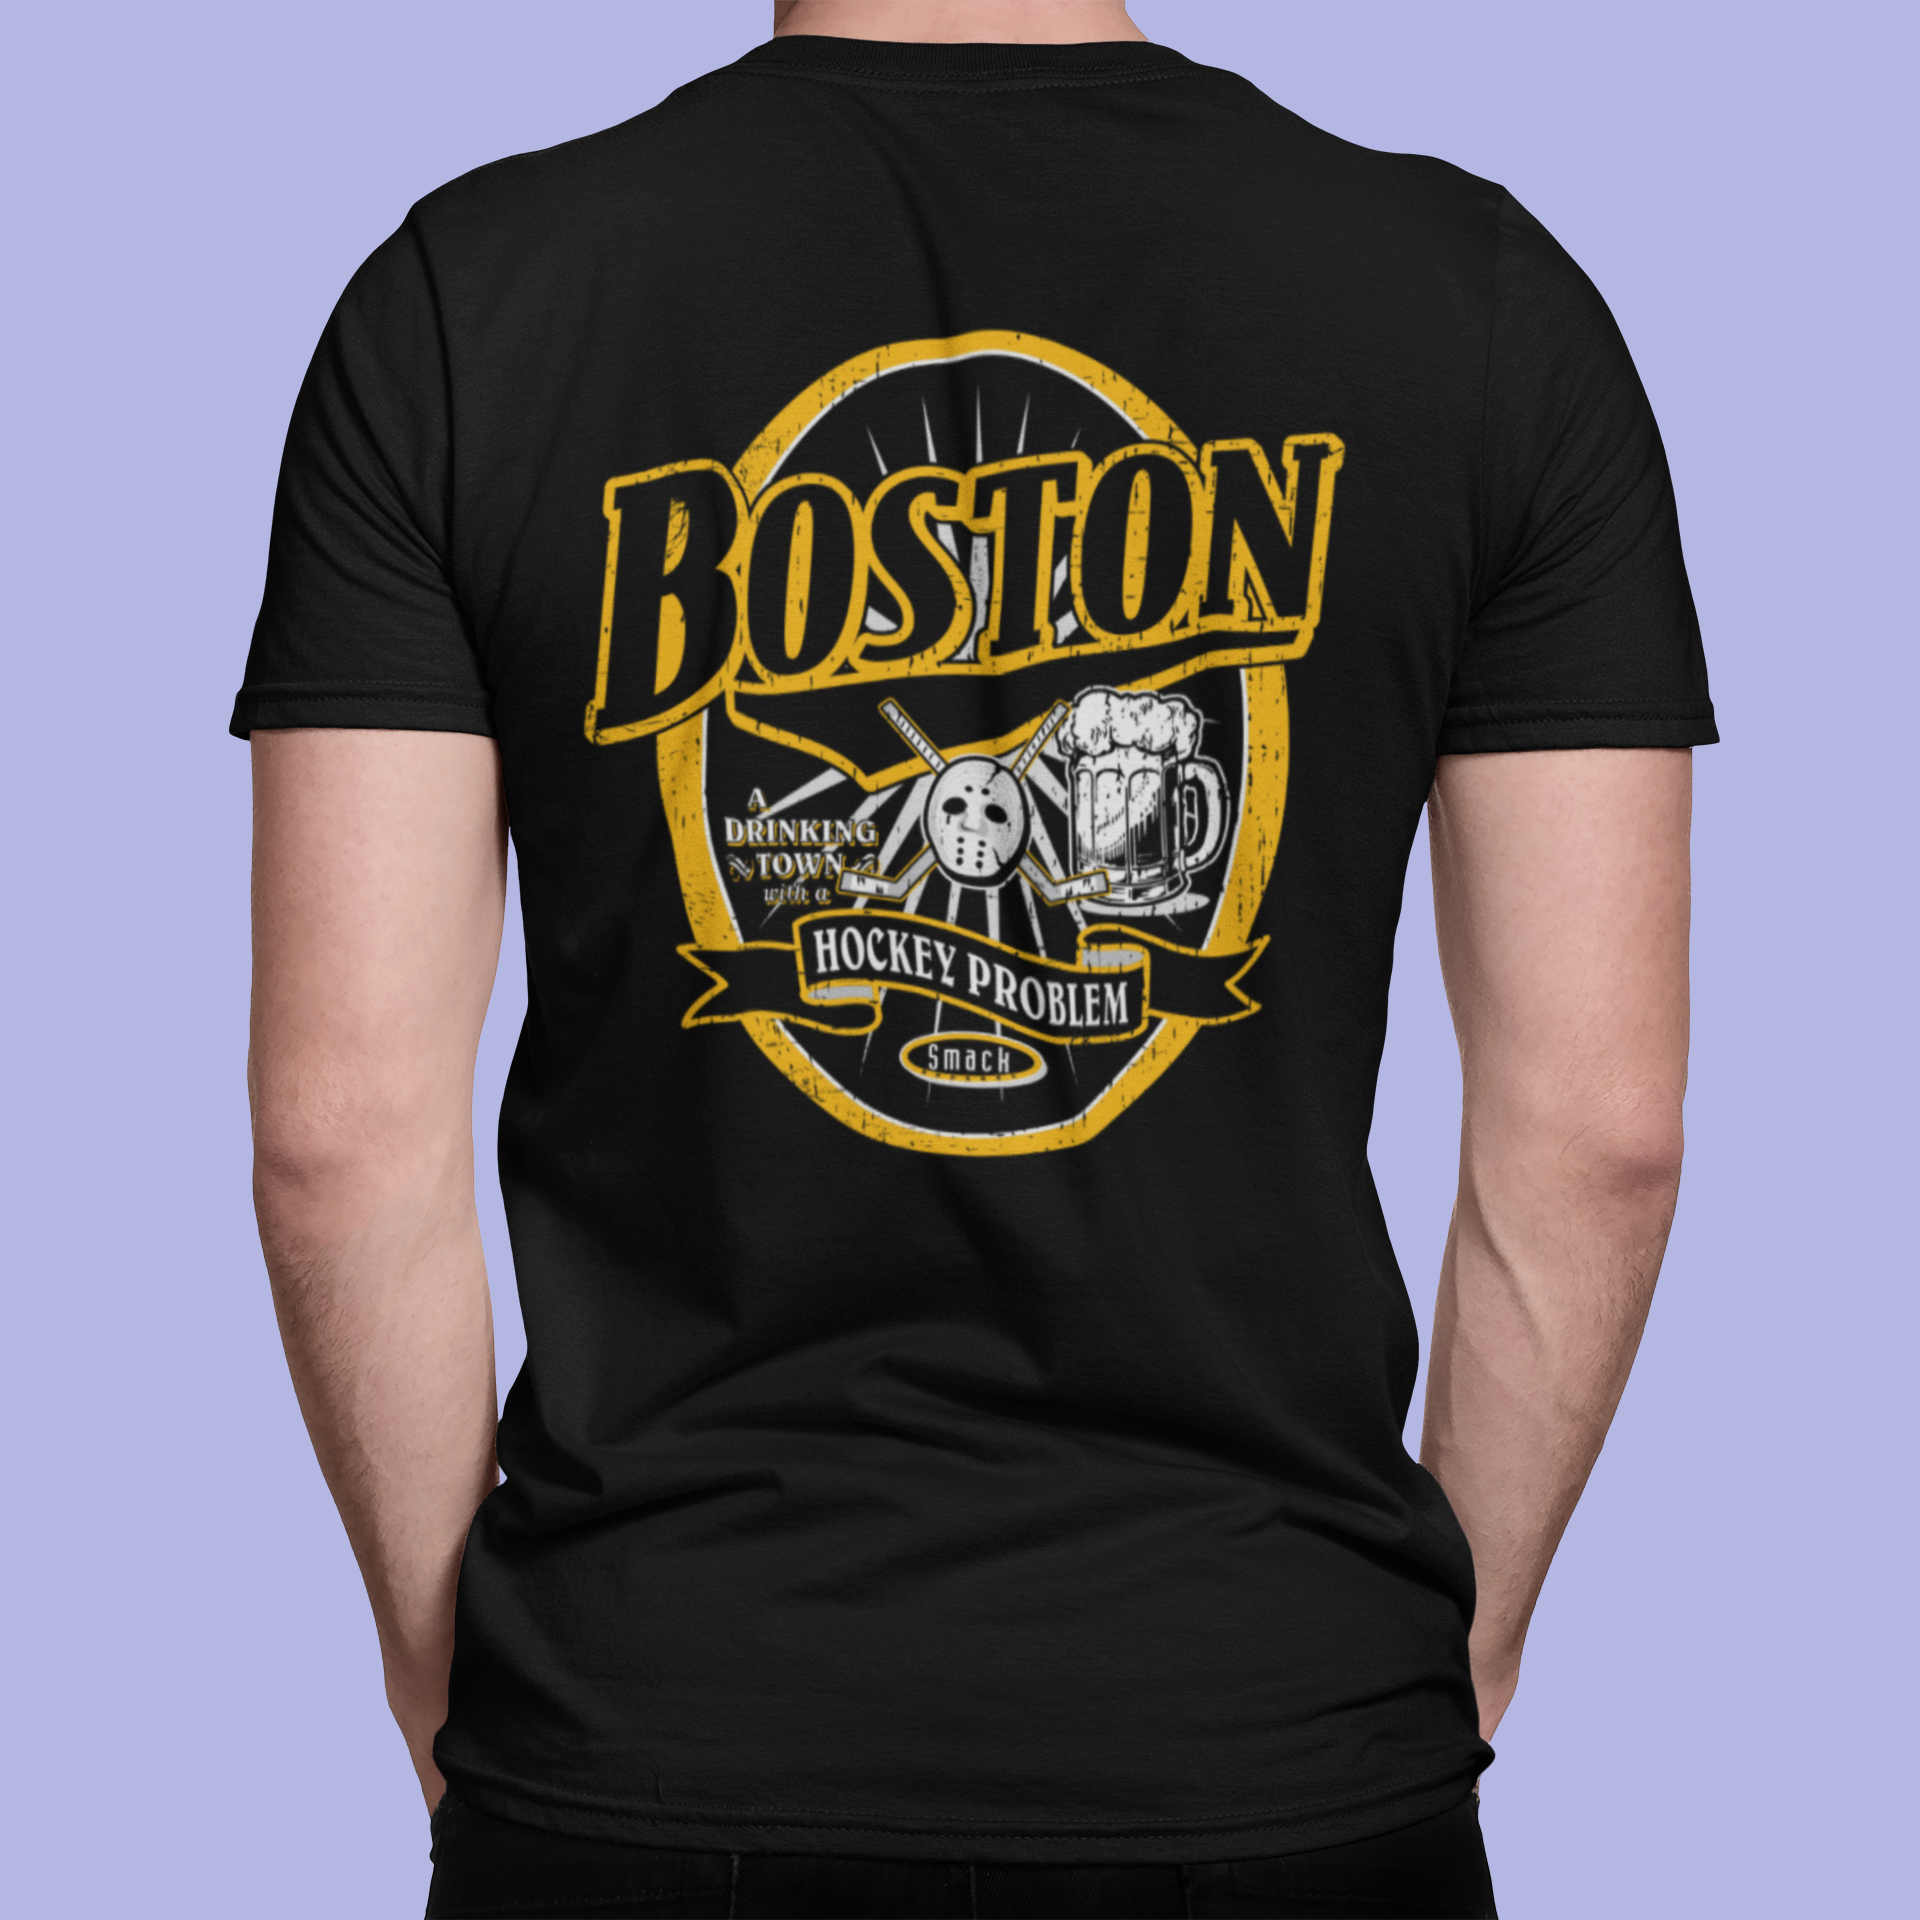 Cheap Boston Bruins Apparel, Discount Bruins Gear, NHL Bruins